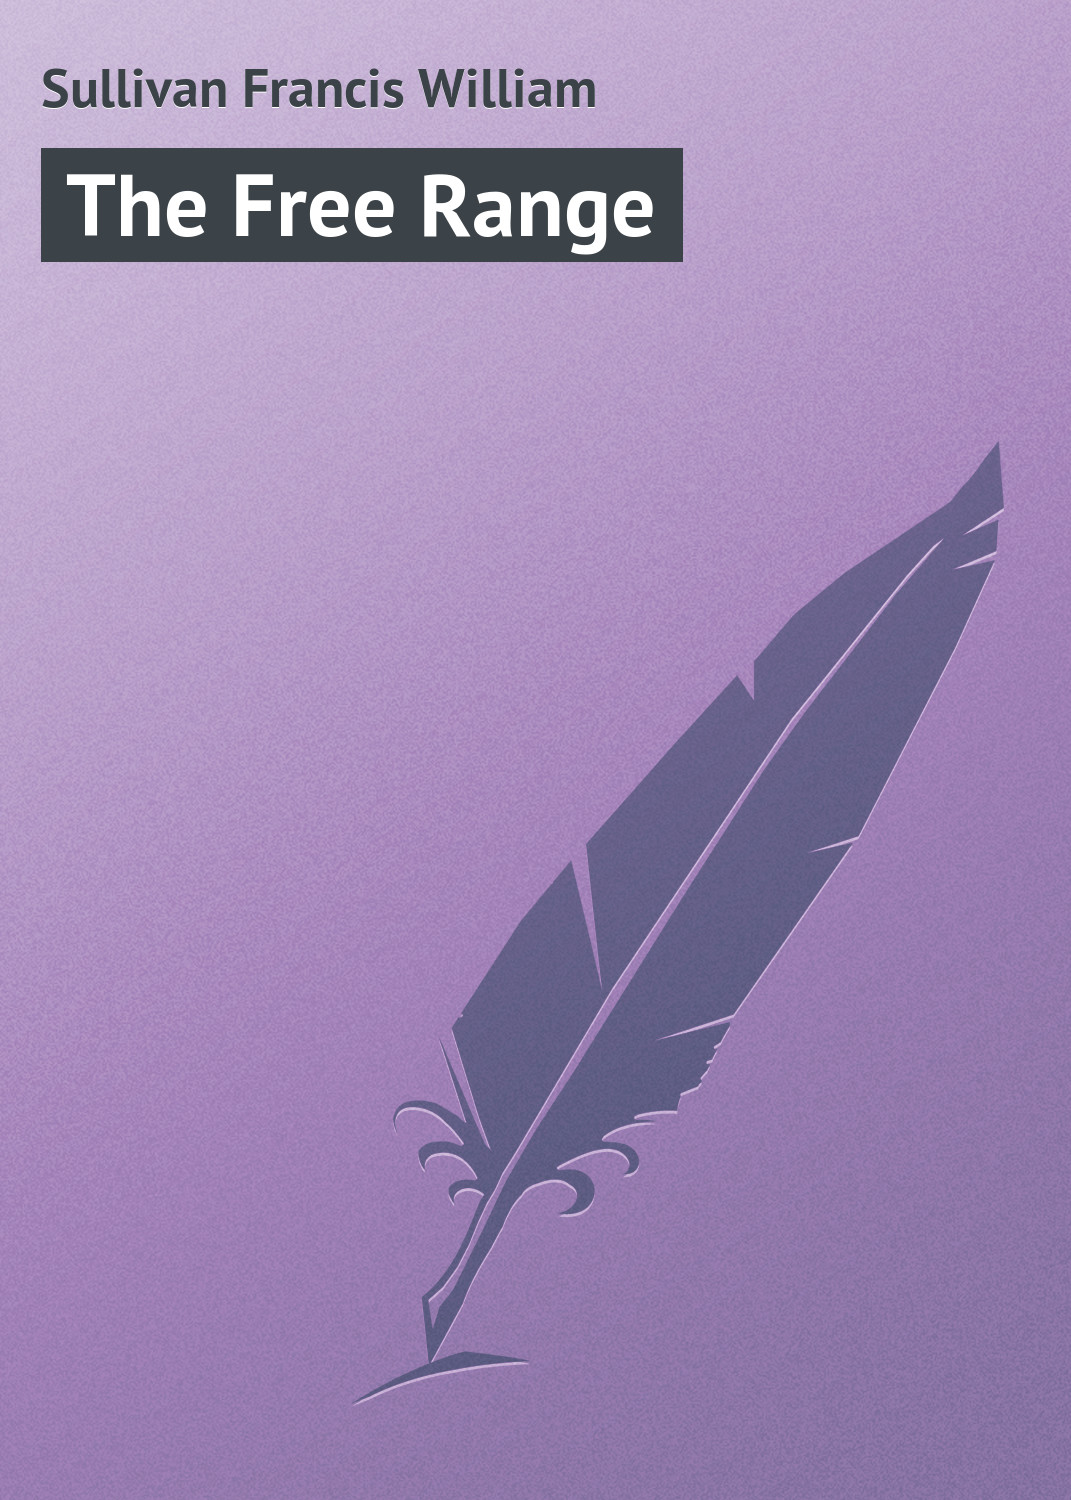 Книга The Free Range из серии , созданная Francis Sullivan, может относится к жанру Иностранные языки, Зарубежная классика, Зарубежные приключения. Стоимость электронной книги The Free Range с идентификатором 23158491 составляет 5.99 руб.